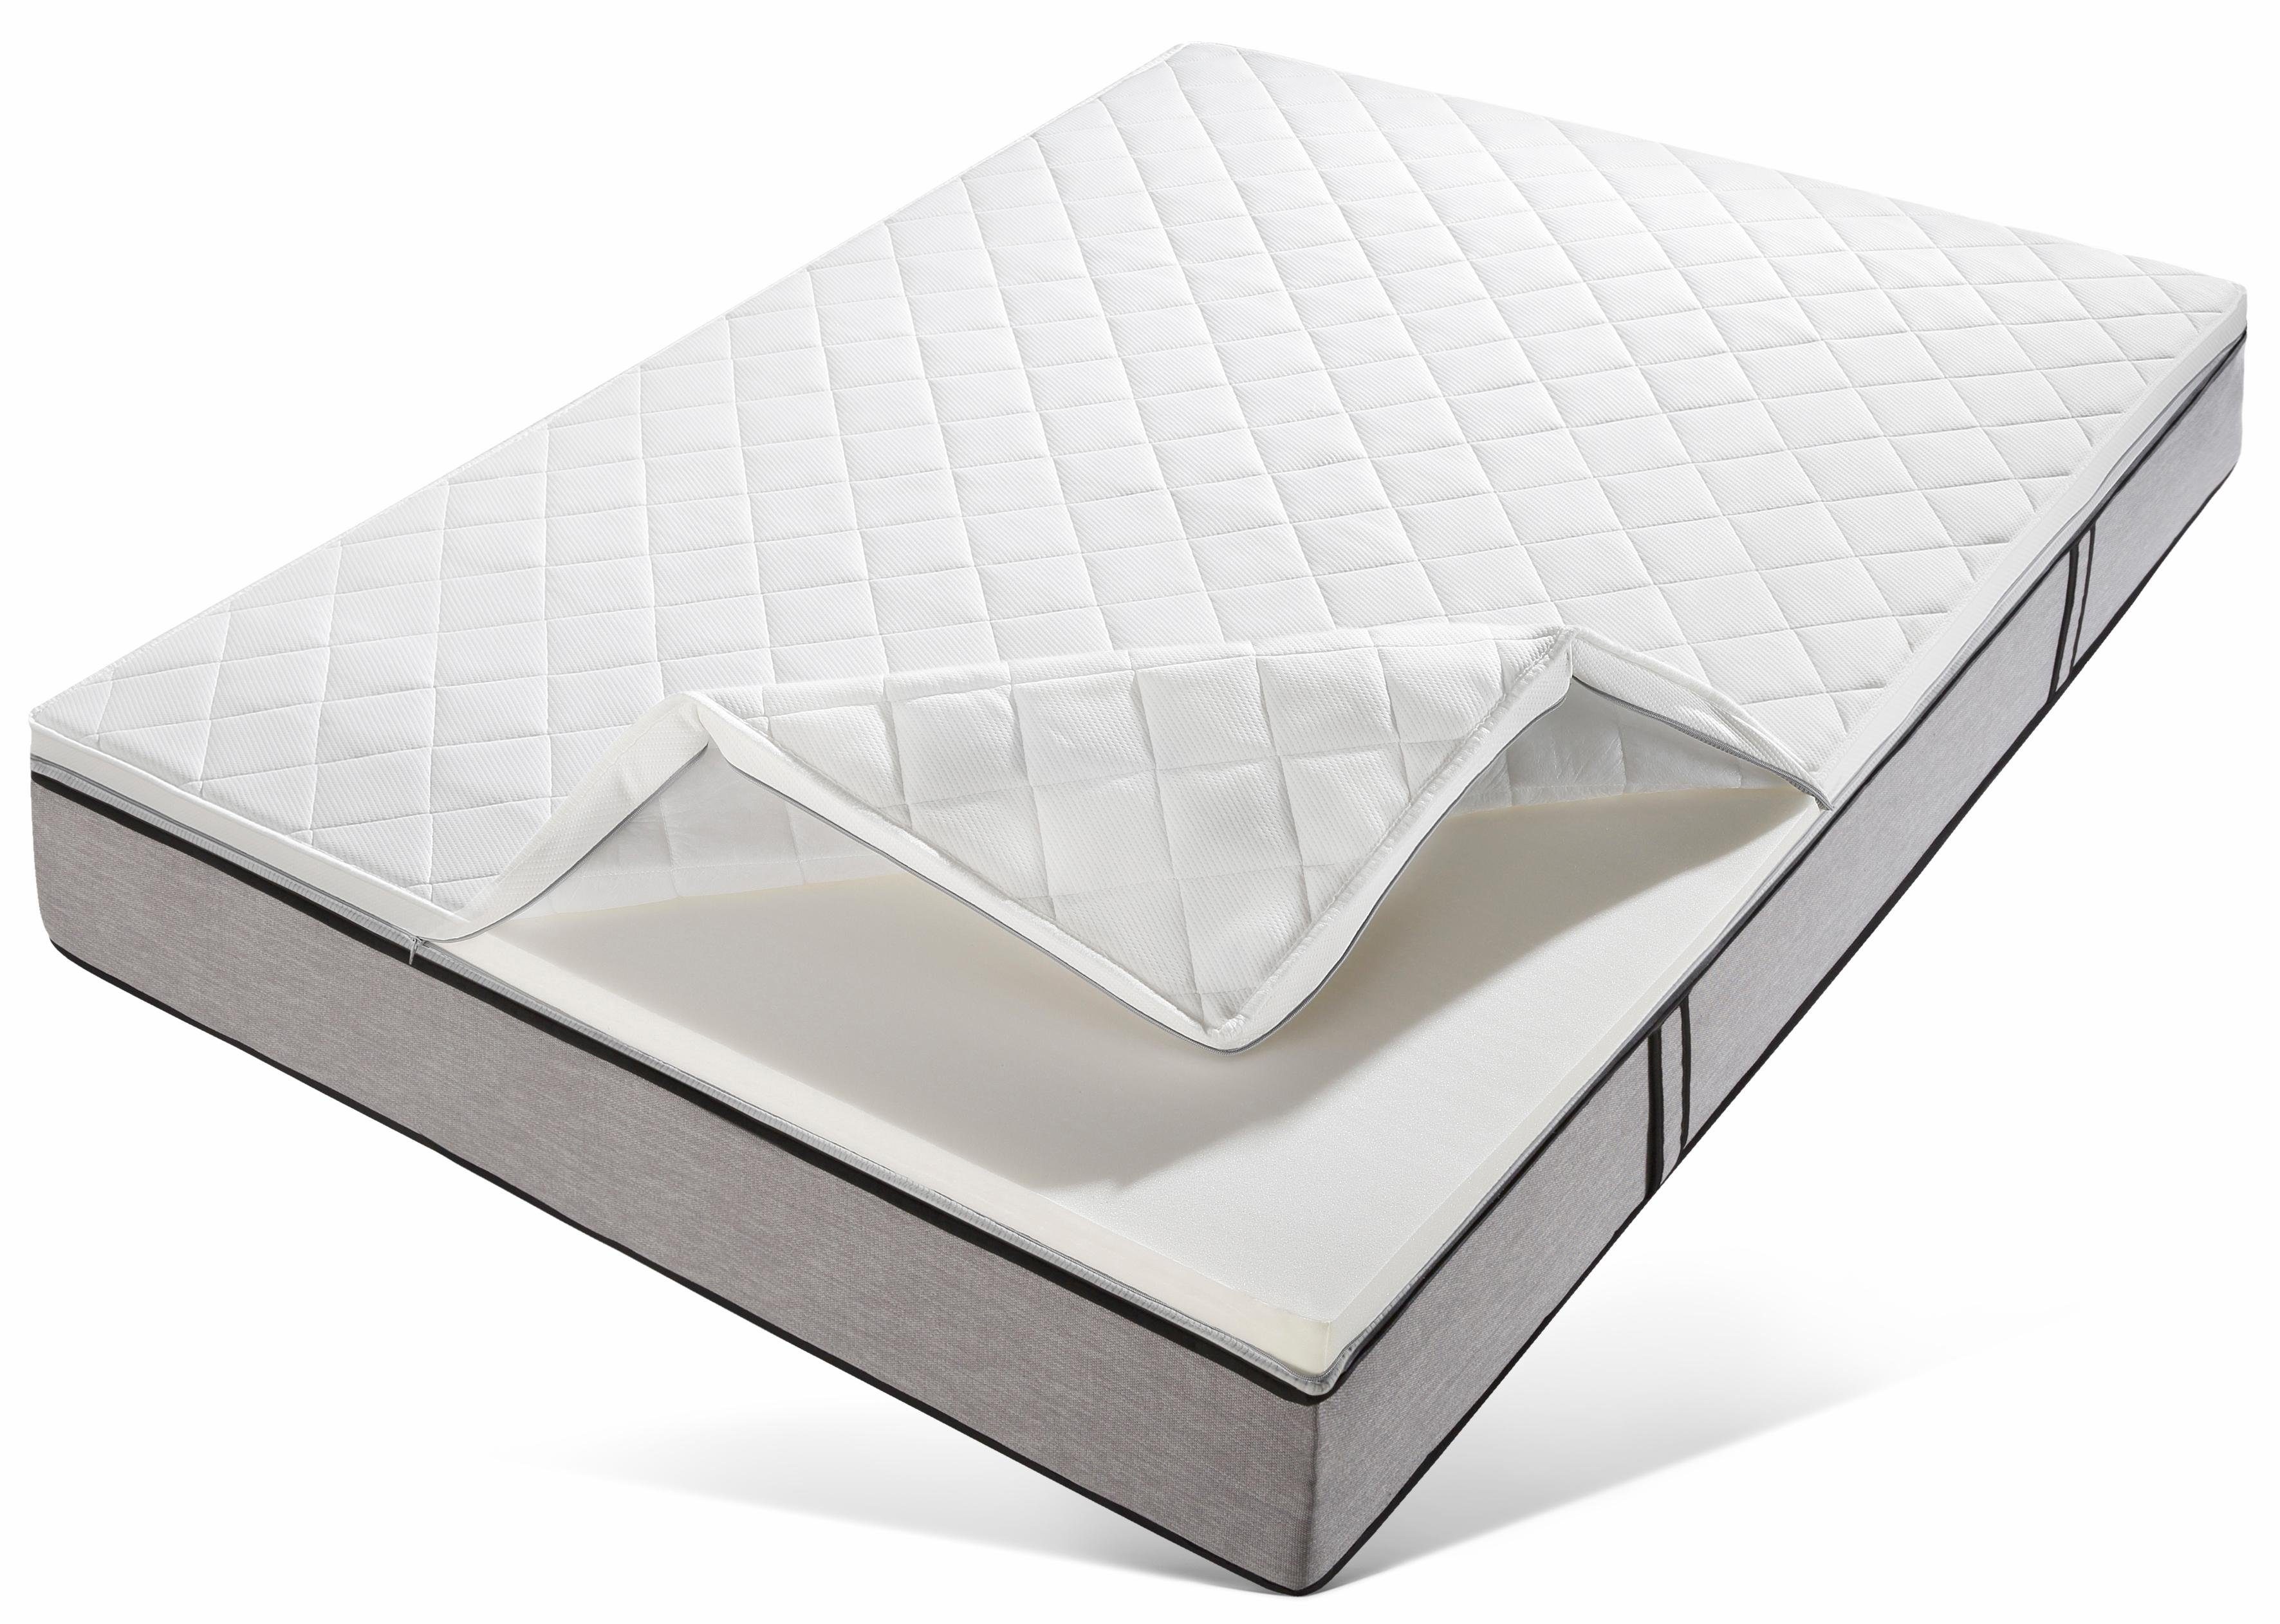 Topper Komfort Plus, Beco, 7 cm hoch, Komfortschaum, die Aufwertung für ihre Matratze bekannt aus der TV-Werbung